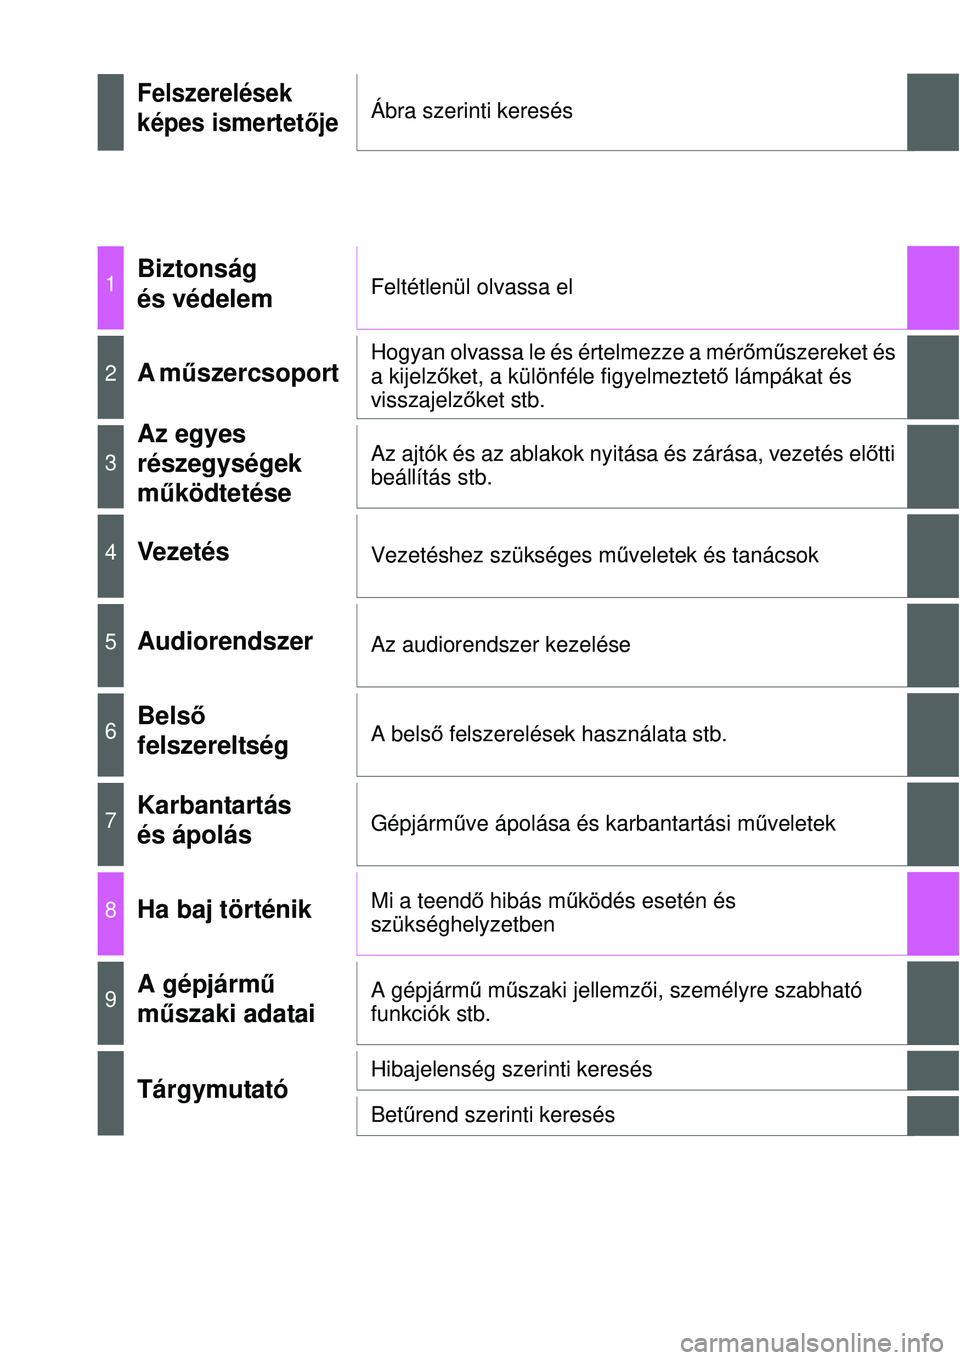 TOYOTA YARIS HATCHBACK 2014  Kezelési útmutató (in Hungarian) Felszerelések
képes ismertetőjeÁbra szerinti keresés
1Biztonság 
és védelemFeltétlenül olvassa el
2A műszercsoport Hogyan olvassa le és értelmezze a mérőműszereket és 
a kijelzőket, 